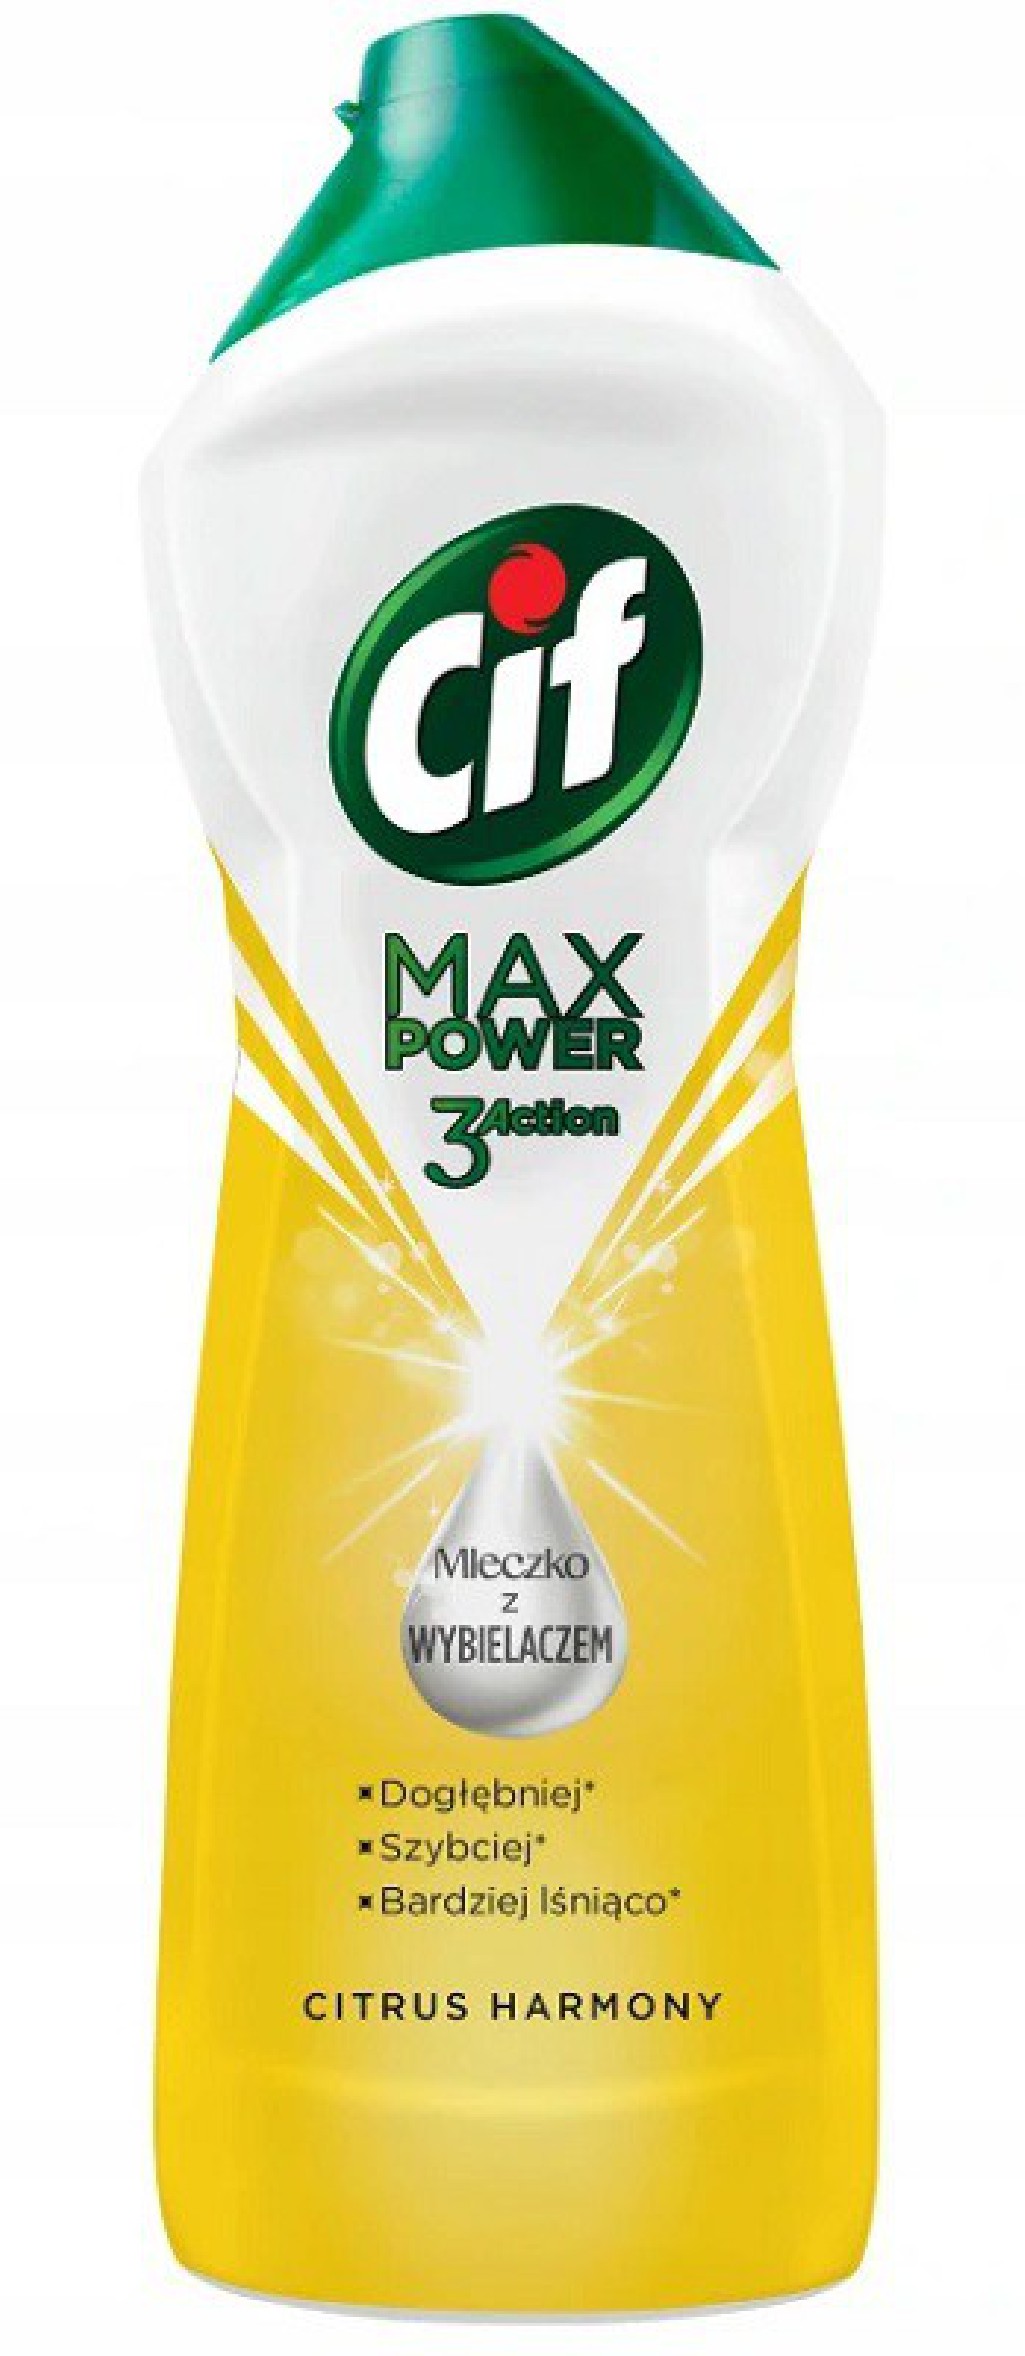 CIF Max Power Mleczko z wybielaczem 1001 g citrus